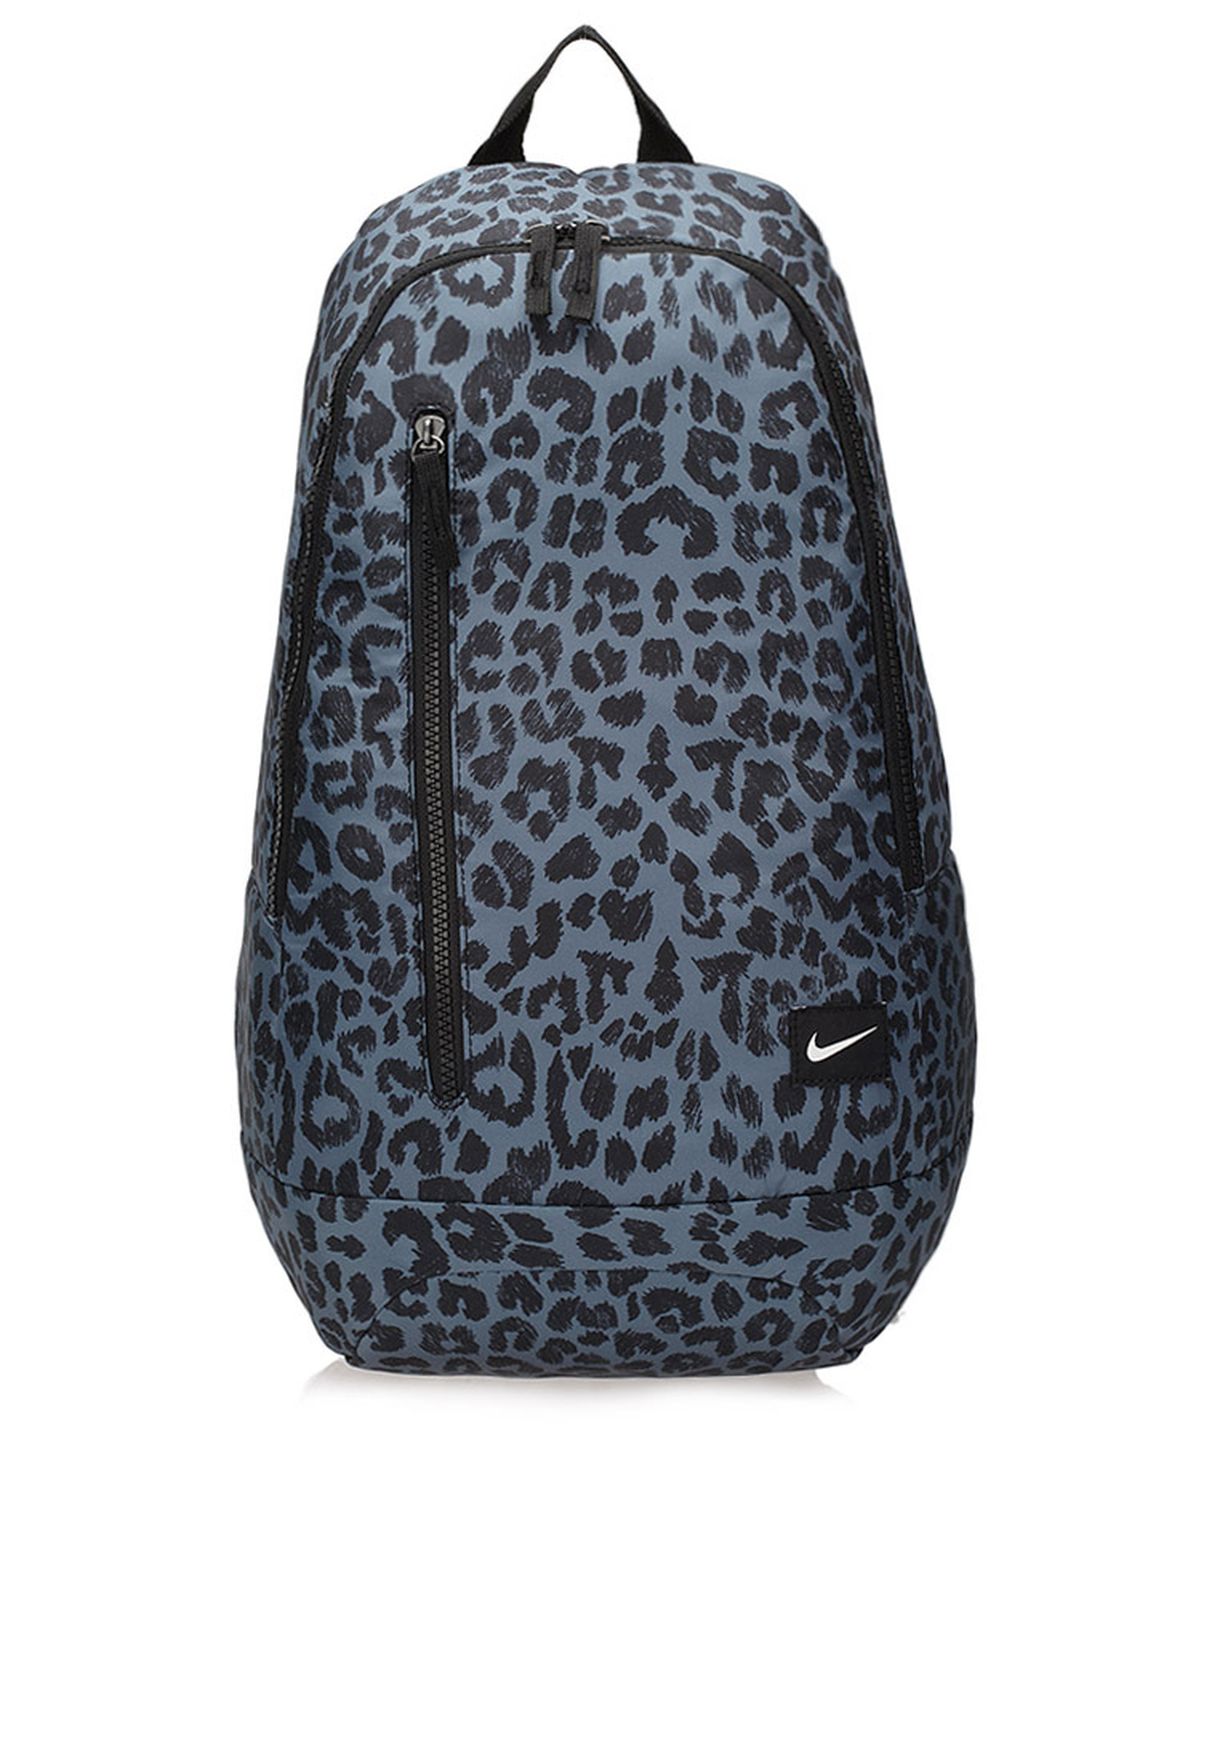 leopard backpack nike